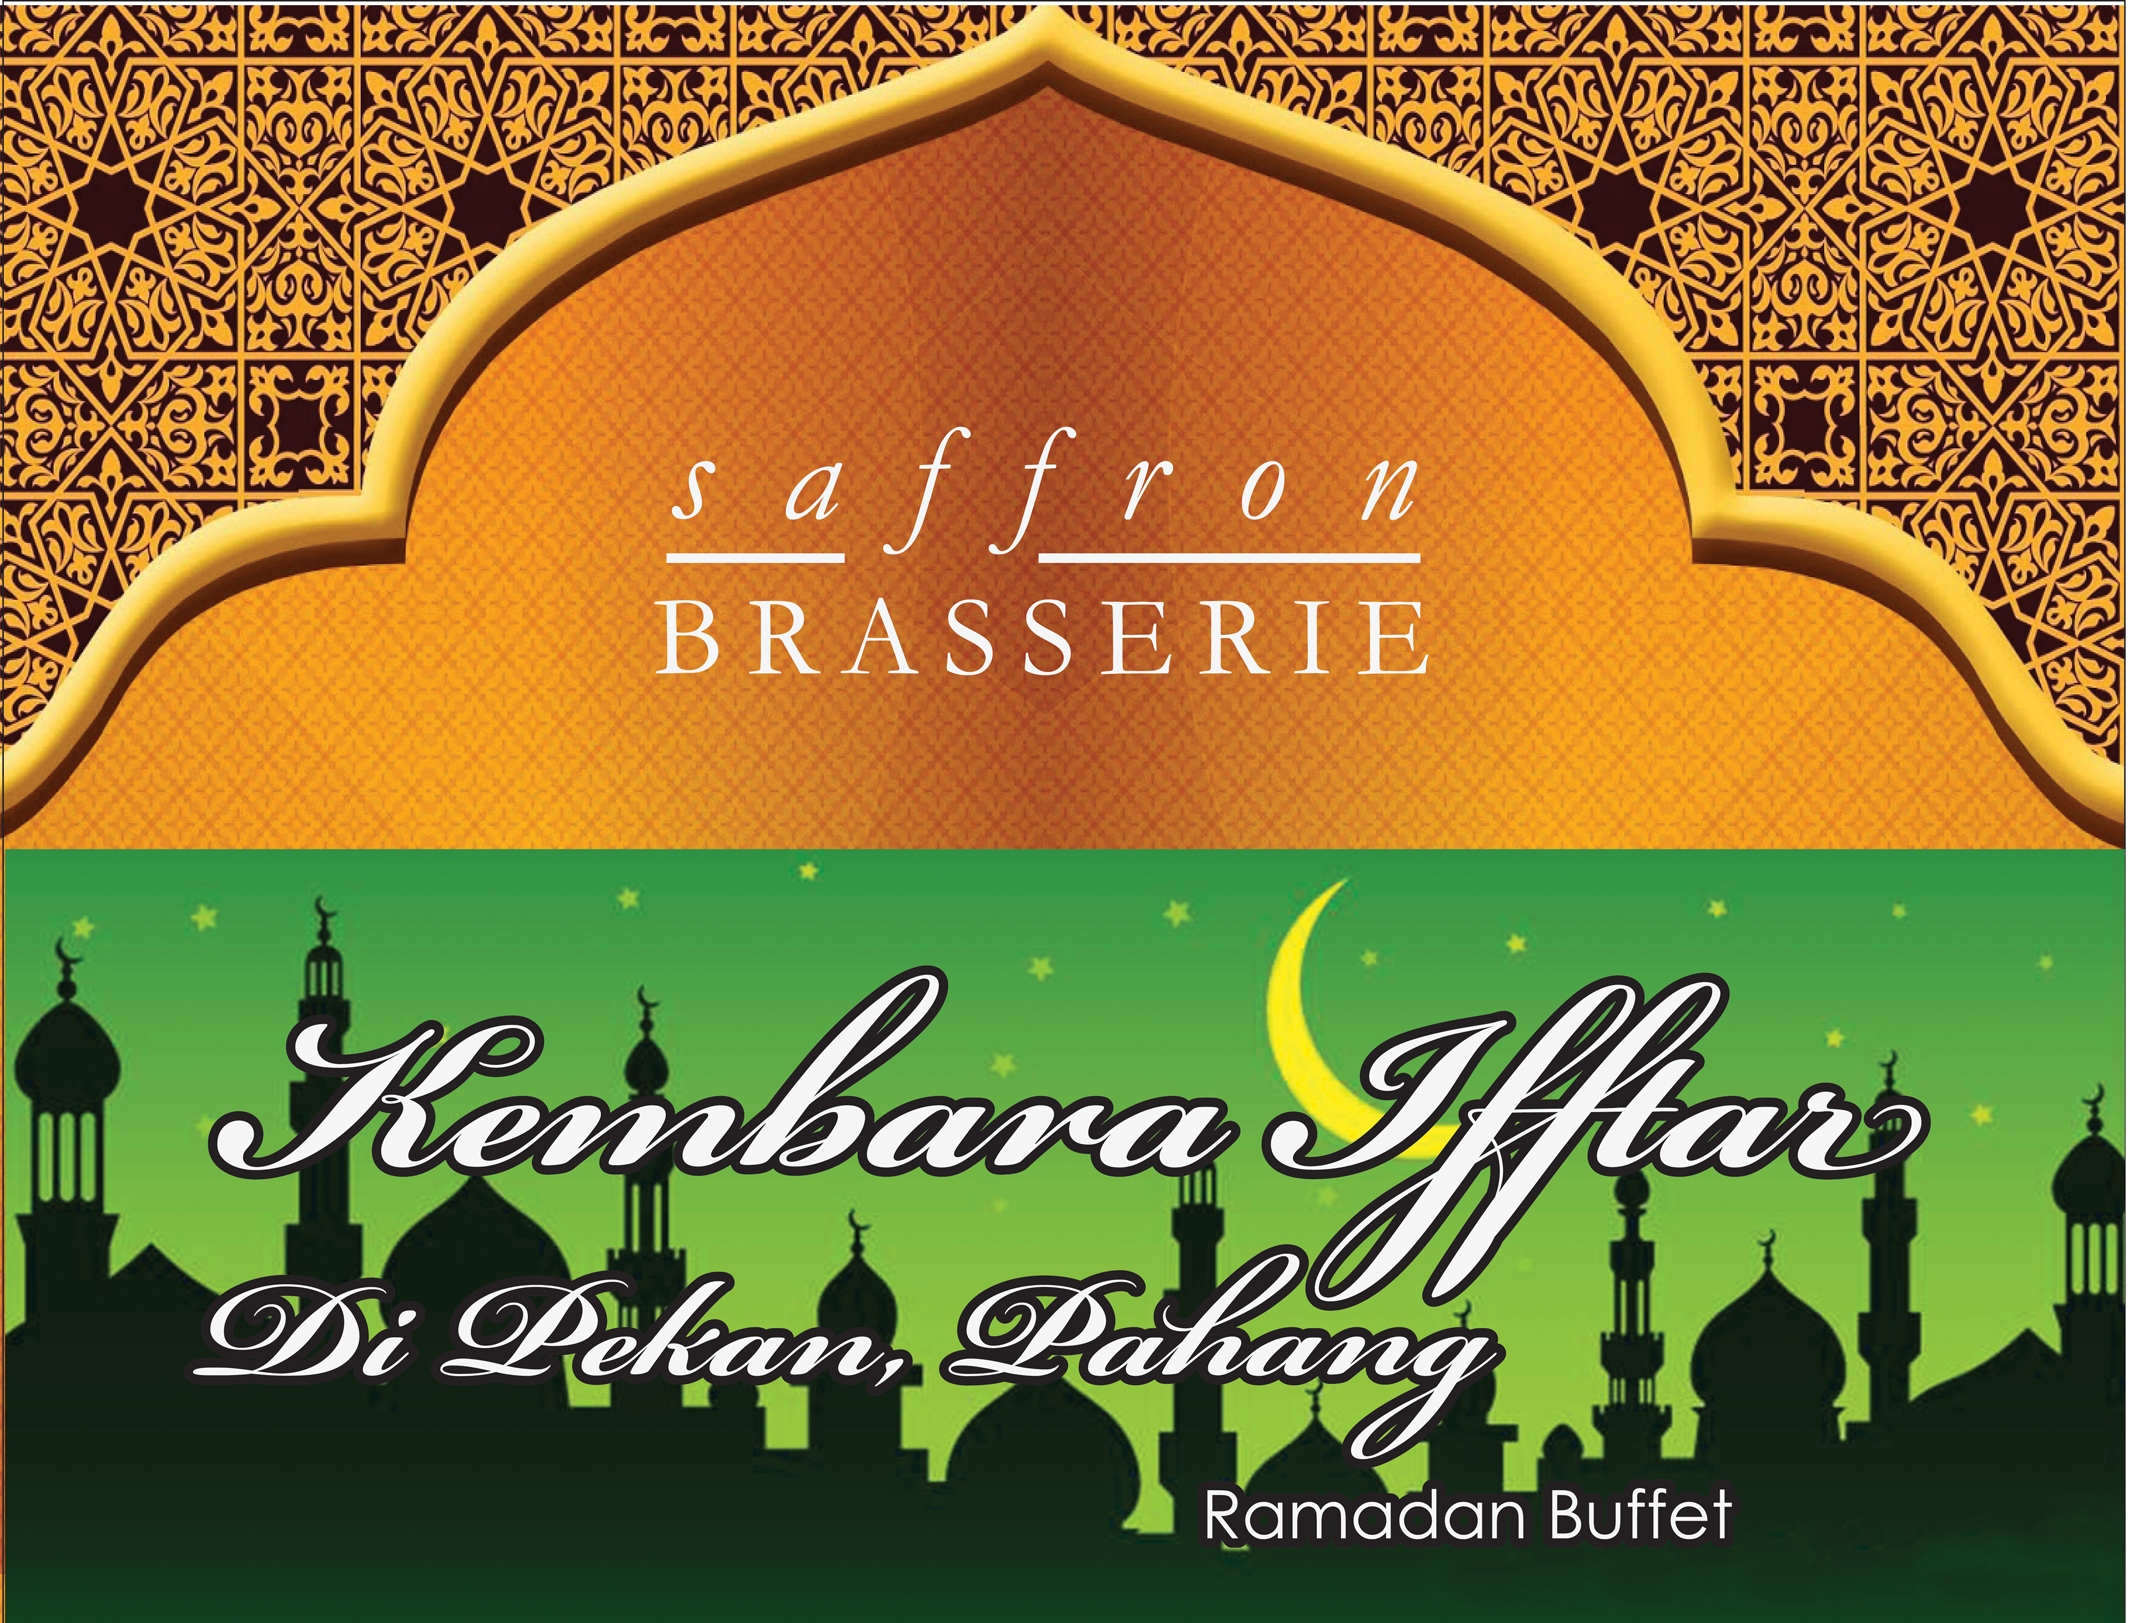 Bufet Ramadan Selera Desa Kembara Iftar Di Pekan, Pahang 